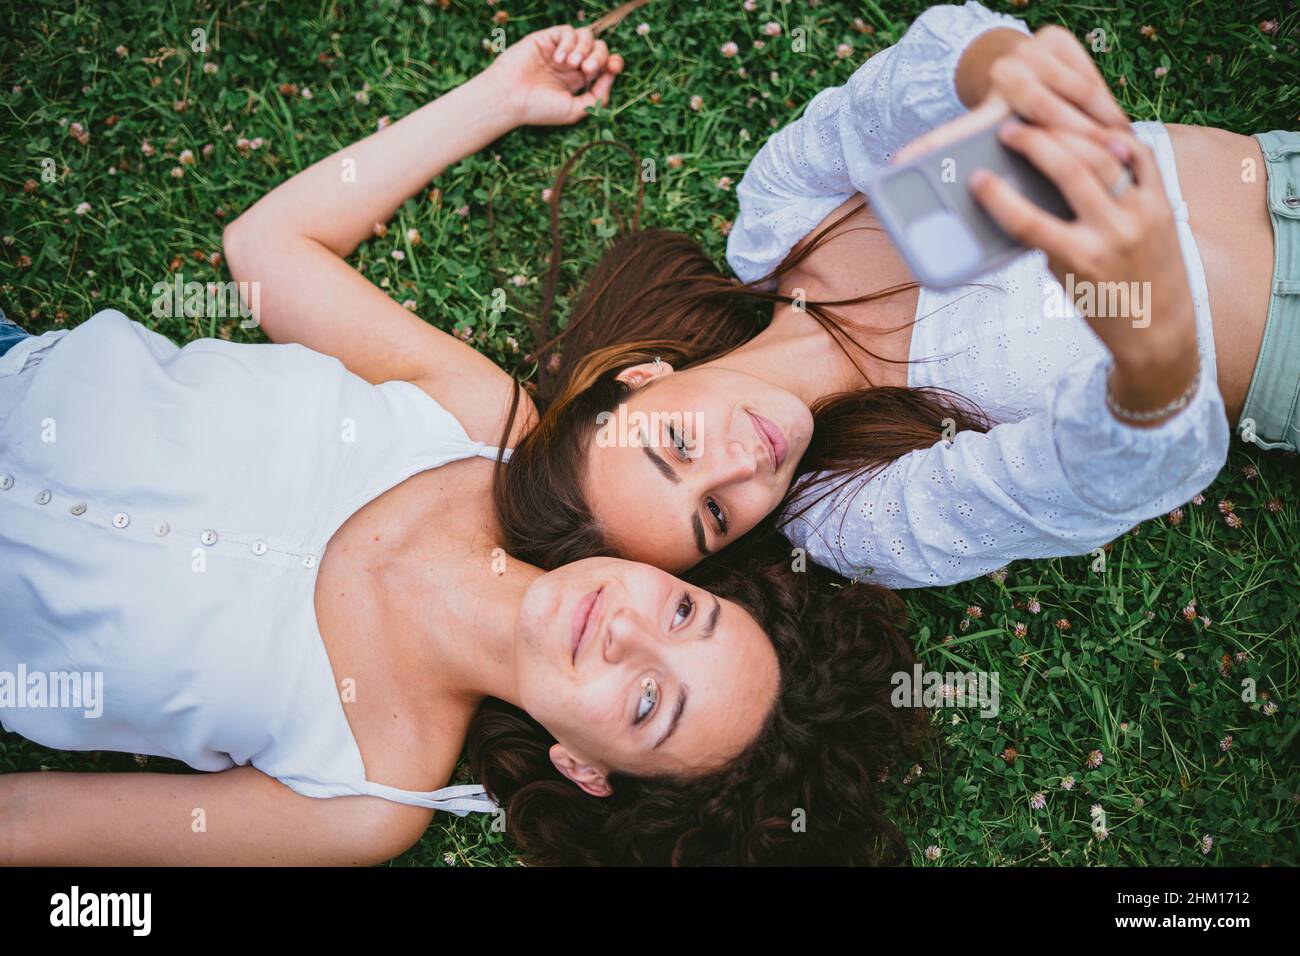 Zwei Freunde machen ein Selfie-Foto, während sie sich in einem Park auf dem Gras niederlegen. Stockfoto